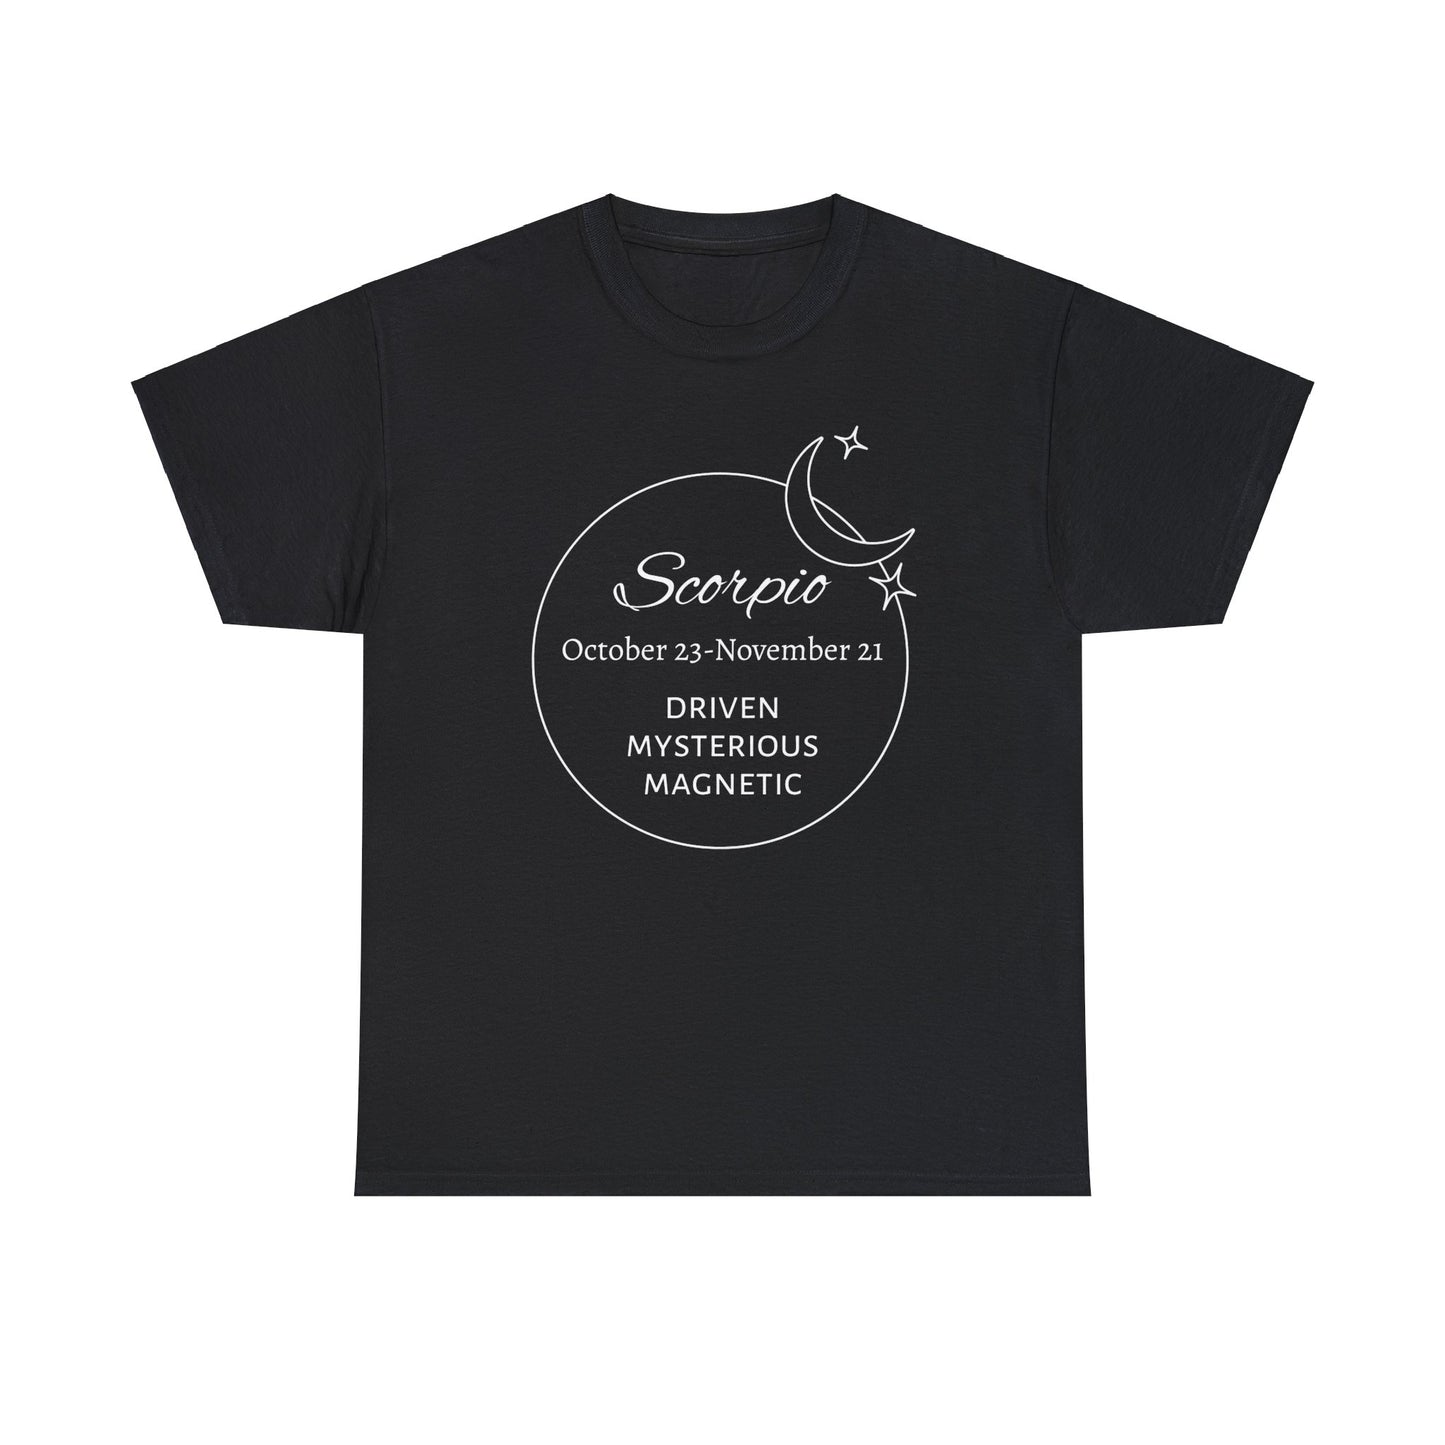 Scorpio traits t-shirt